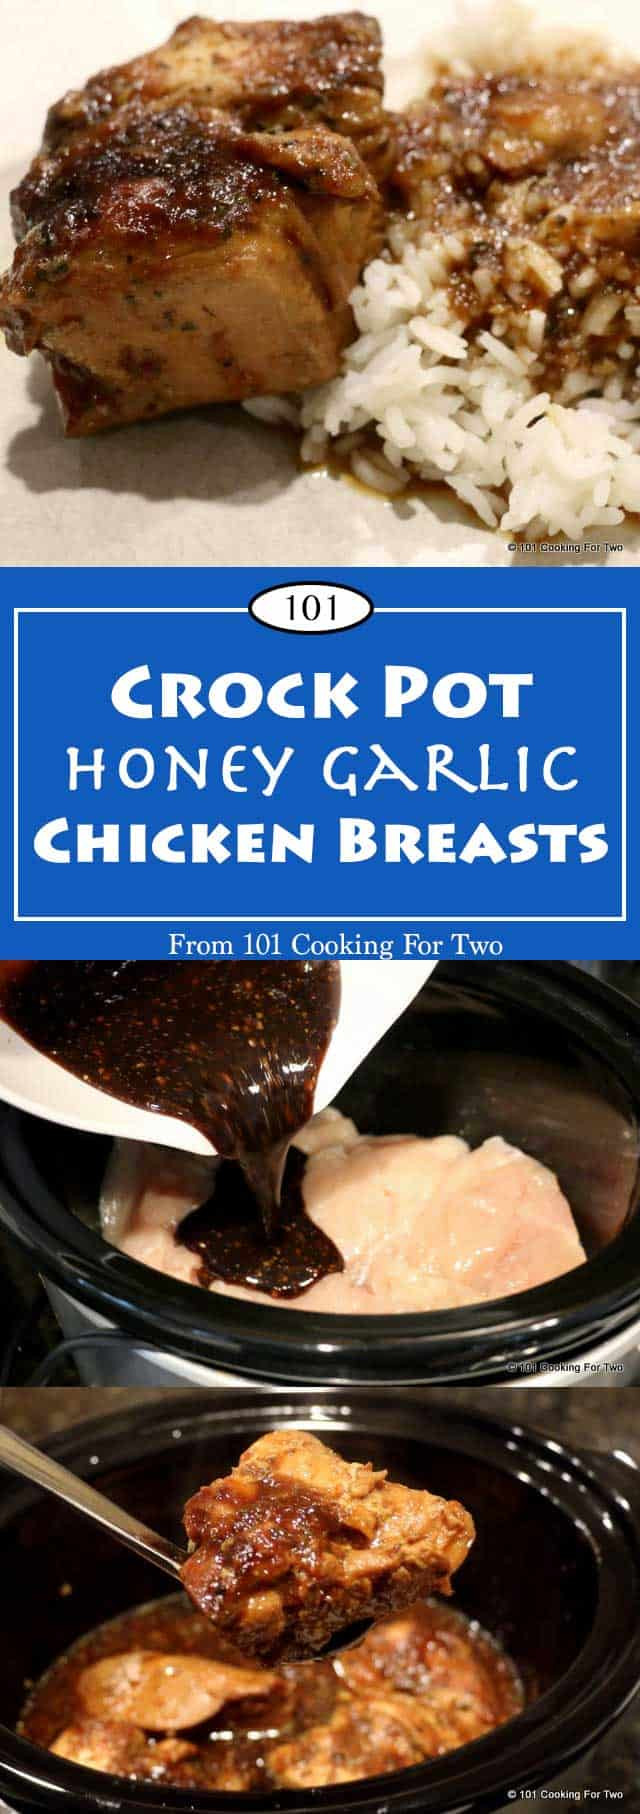 Chicken Breasts Crock Pot
 Crock Pot Honey Garlic Chicken Breast